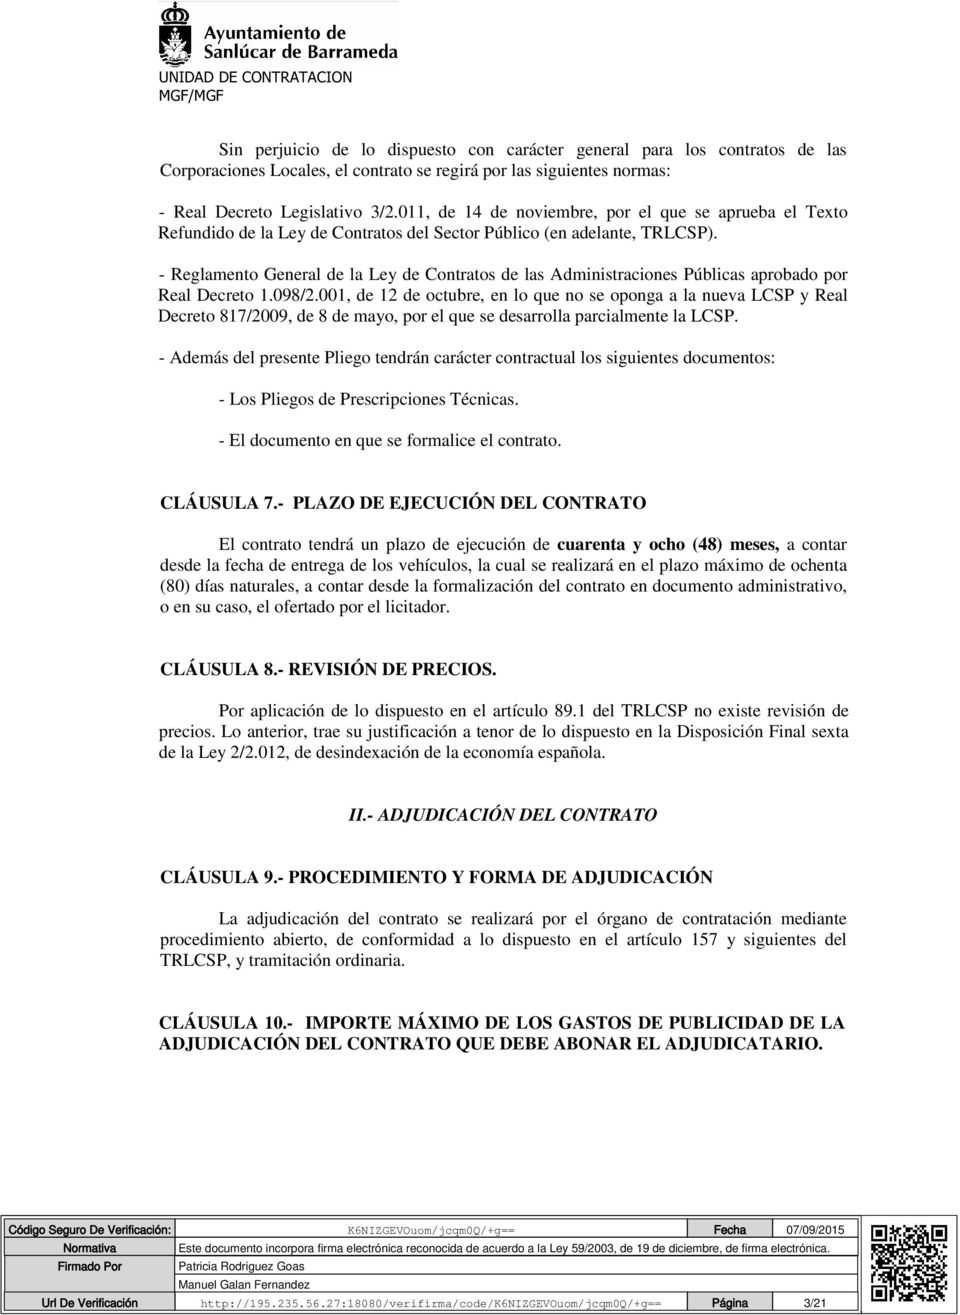 - Reglamento General de la Ley de Contratos de las Administraciones Públicas aprobado por Real Decreto 1.098/2.